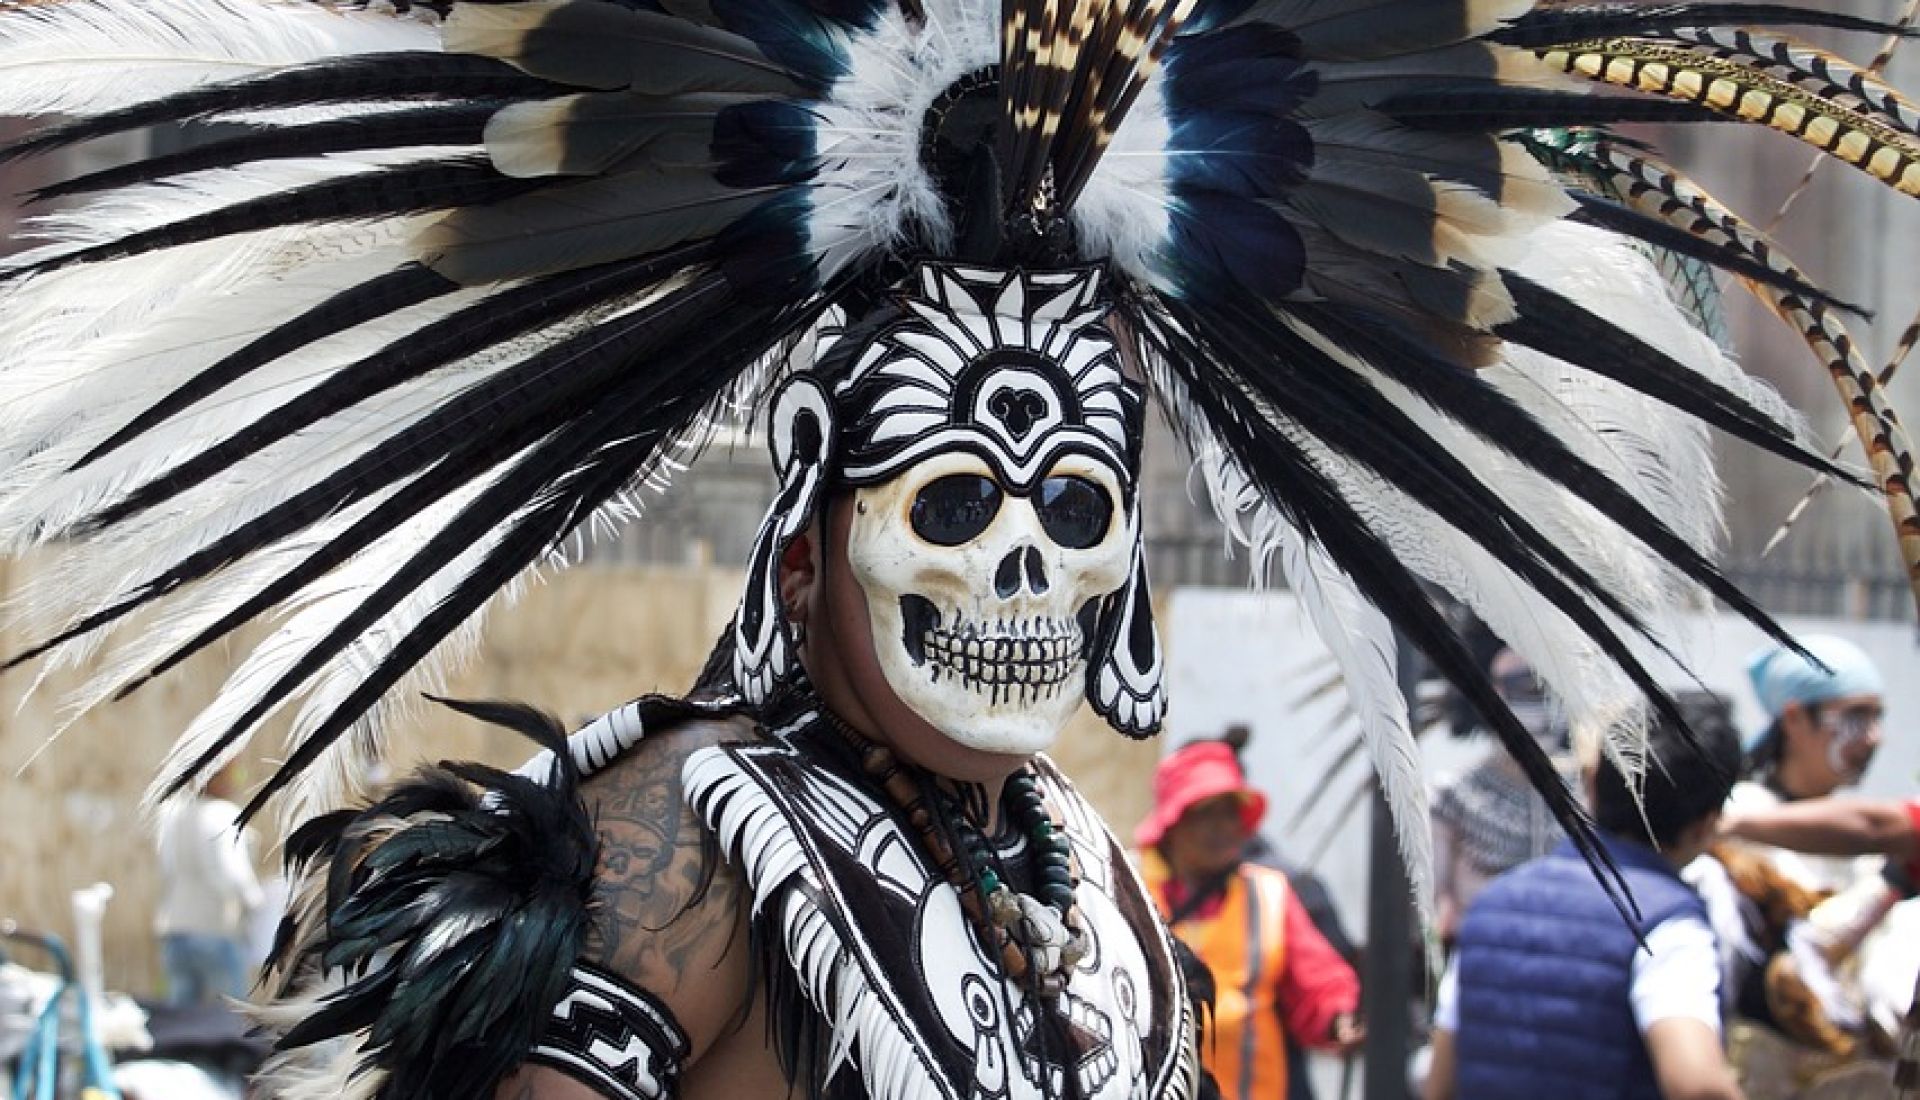 La fête des morts au Mexique